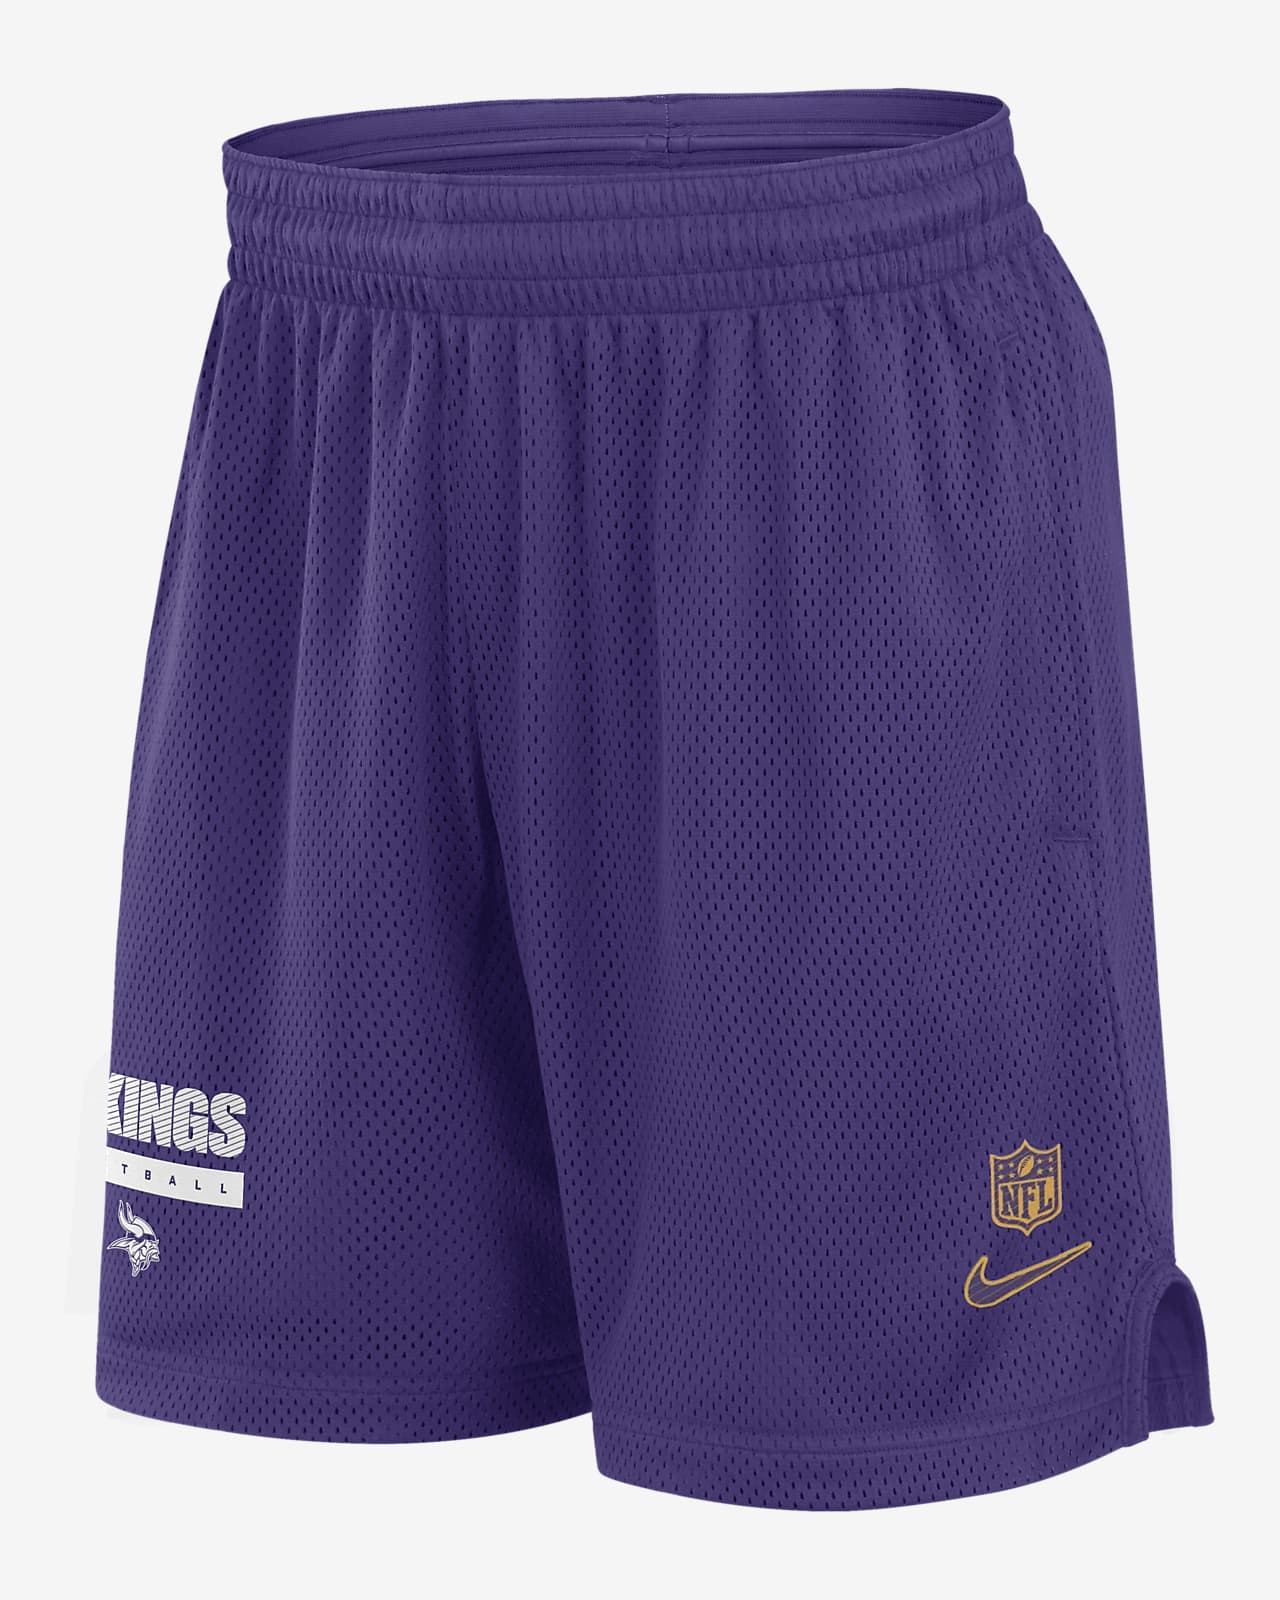 Shorts Nike Dri-FIT de la NFL para hombre Minnesota Vikings Sideline